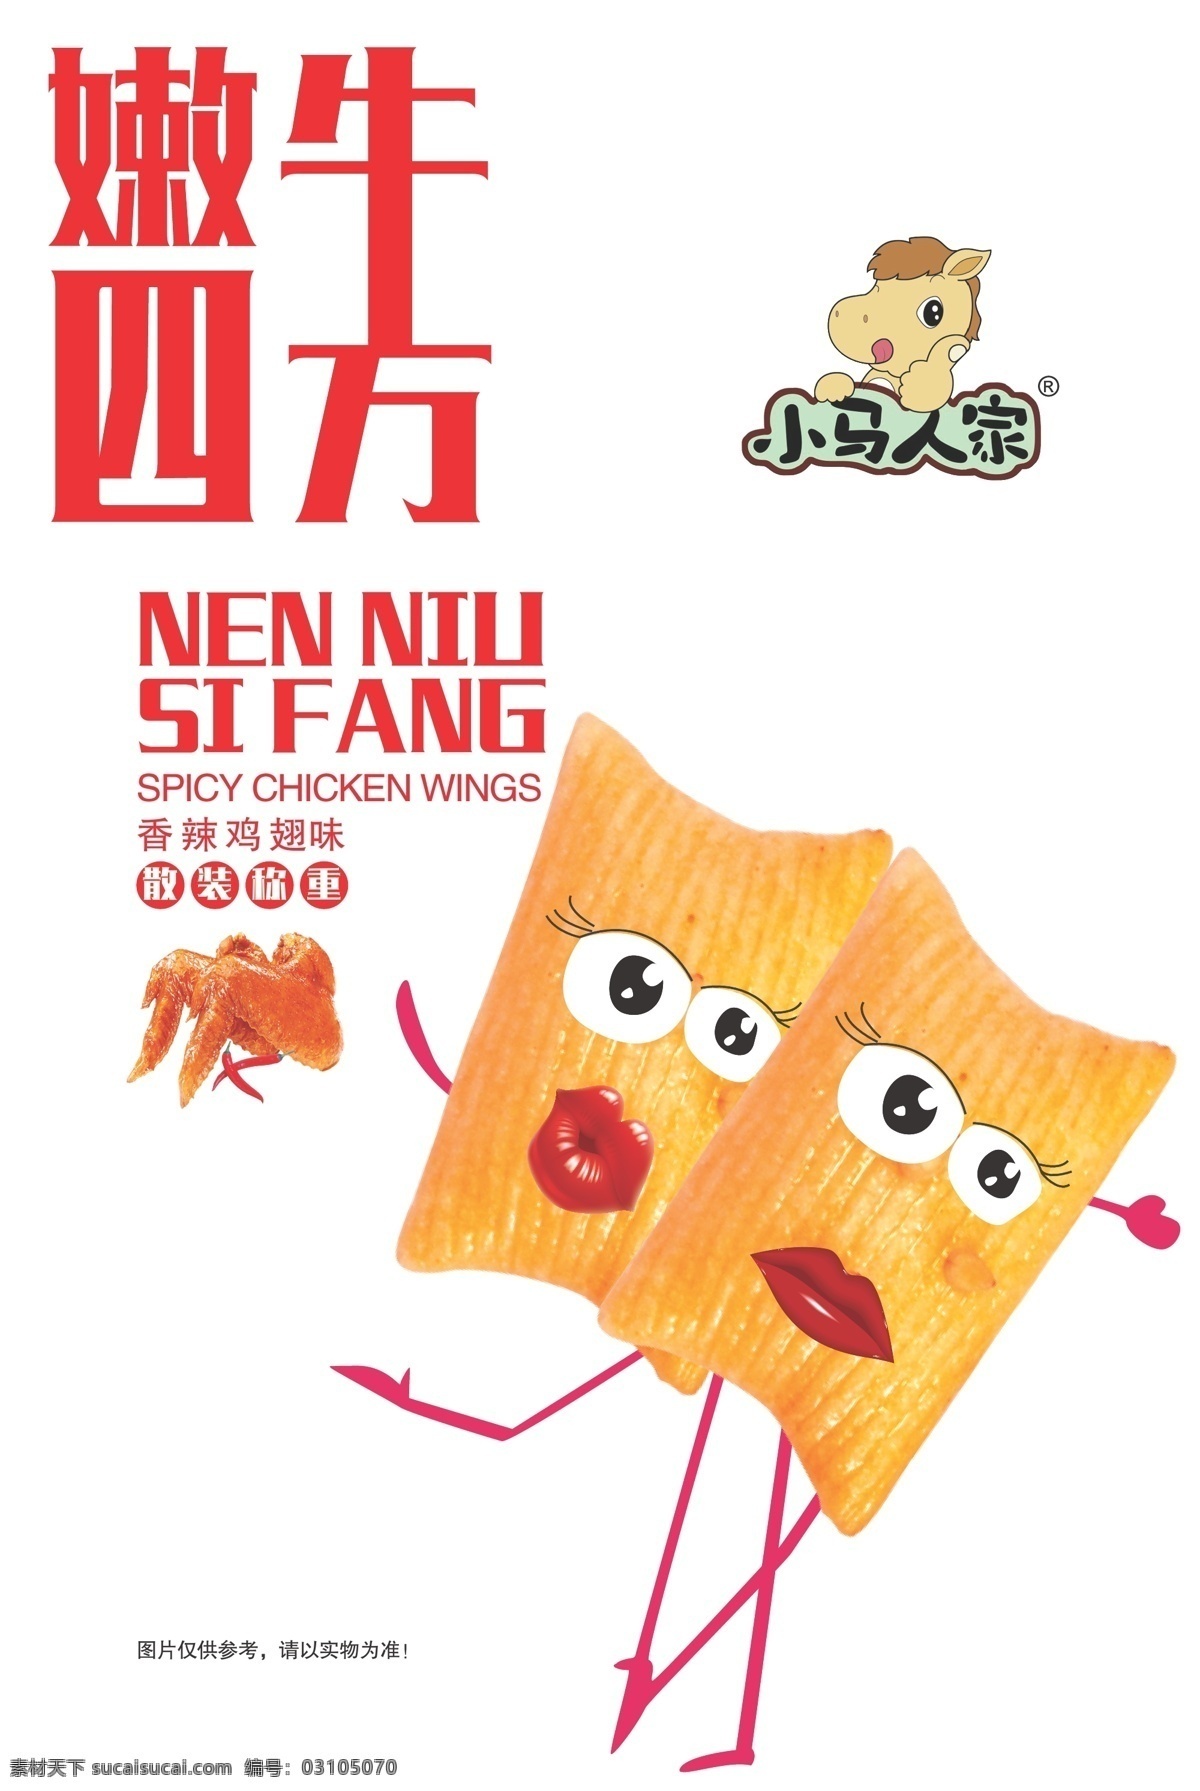 膨化食品 包装设计 包装 卡通人物形象 食品 字体 膨化 psd源文件